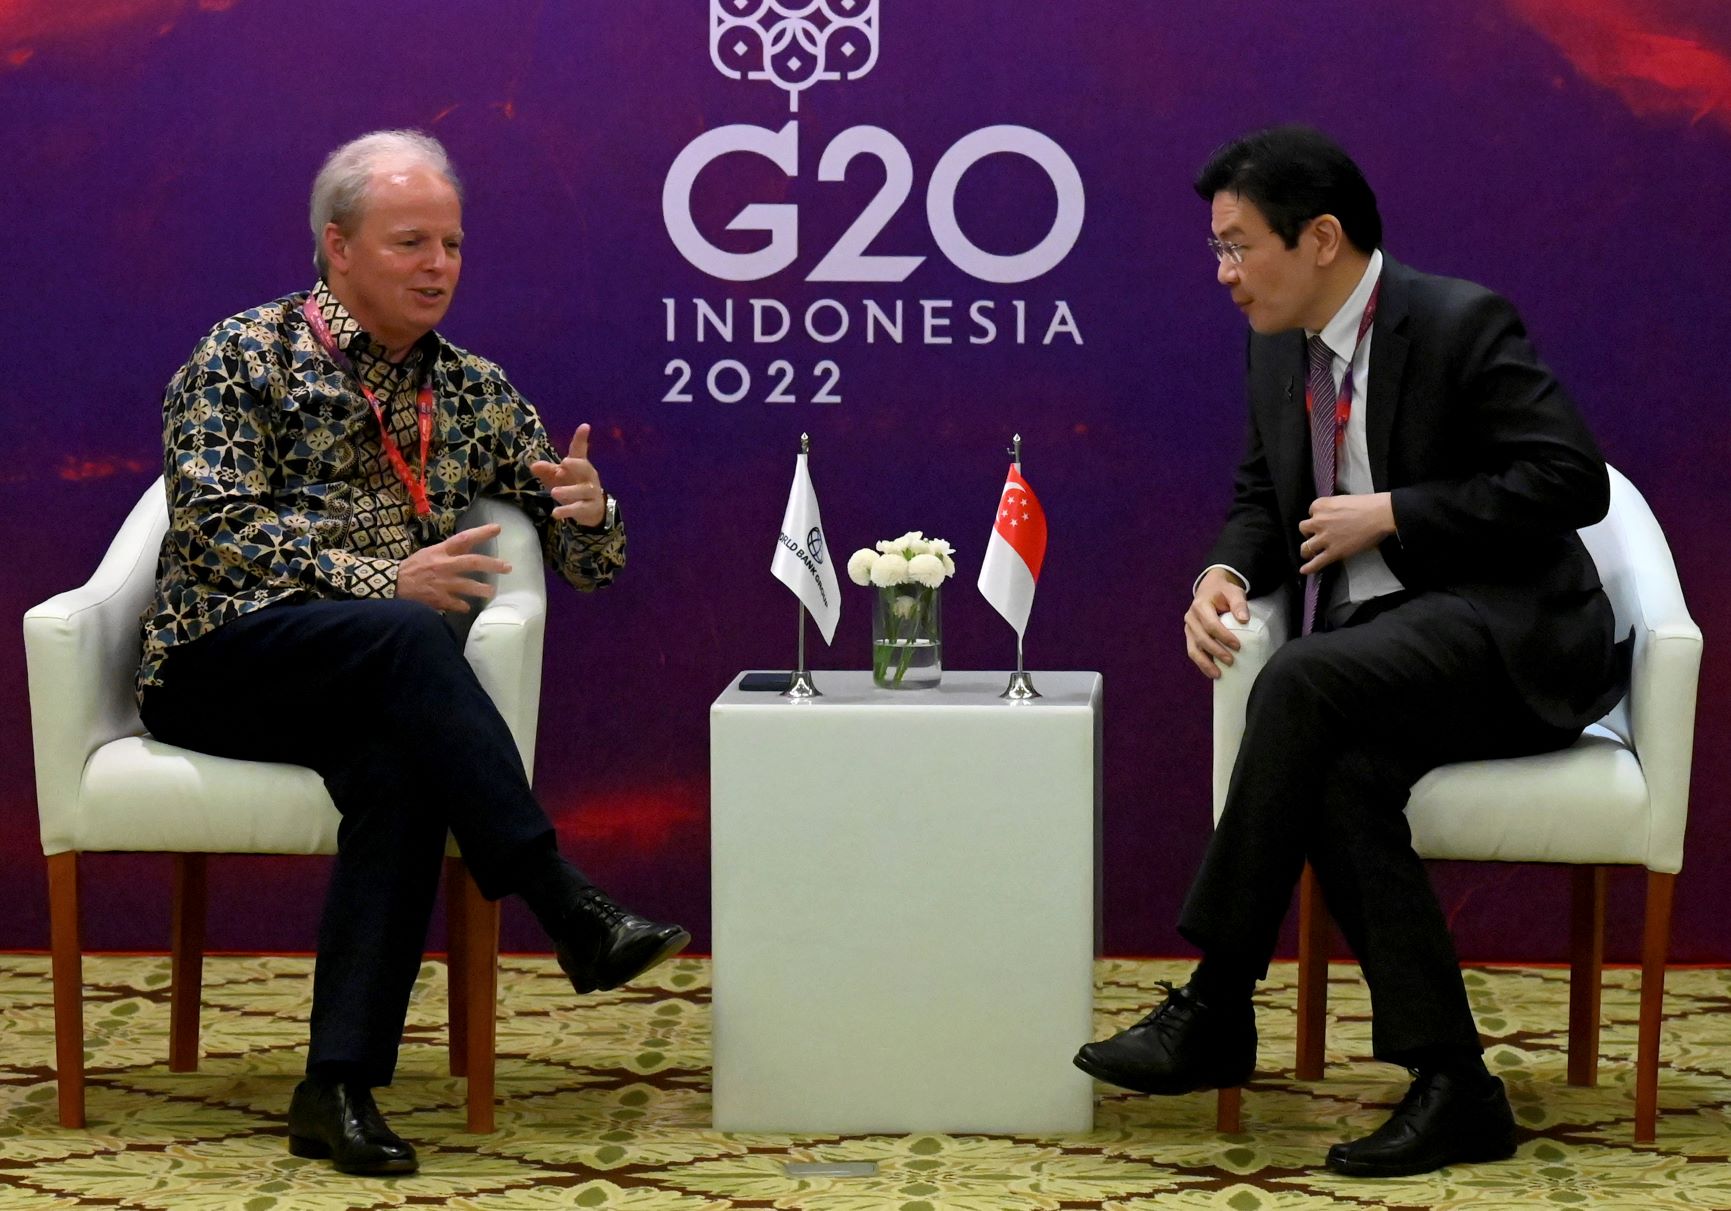 وزير مالية سنغافورة لورانس وونغ في يمين الصورة يتحدث مع المدير بالوكالة لقسم العمليات في البنك الدولي خلال قمة مجموعة العشرين في أندونيسيا بتاريخ 16 يوليو 2022 